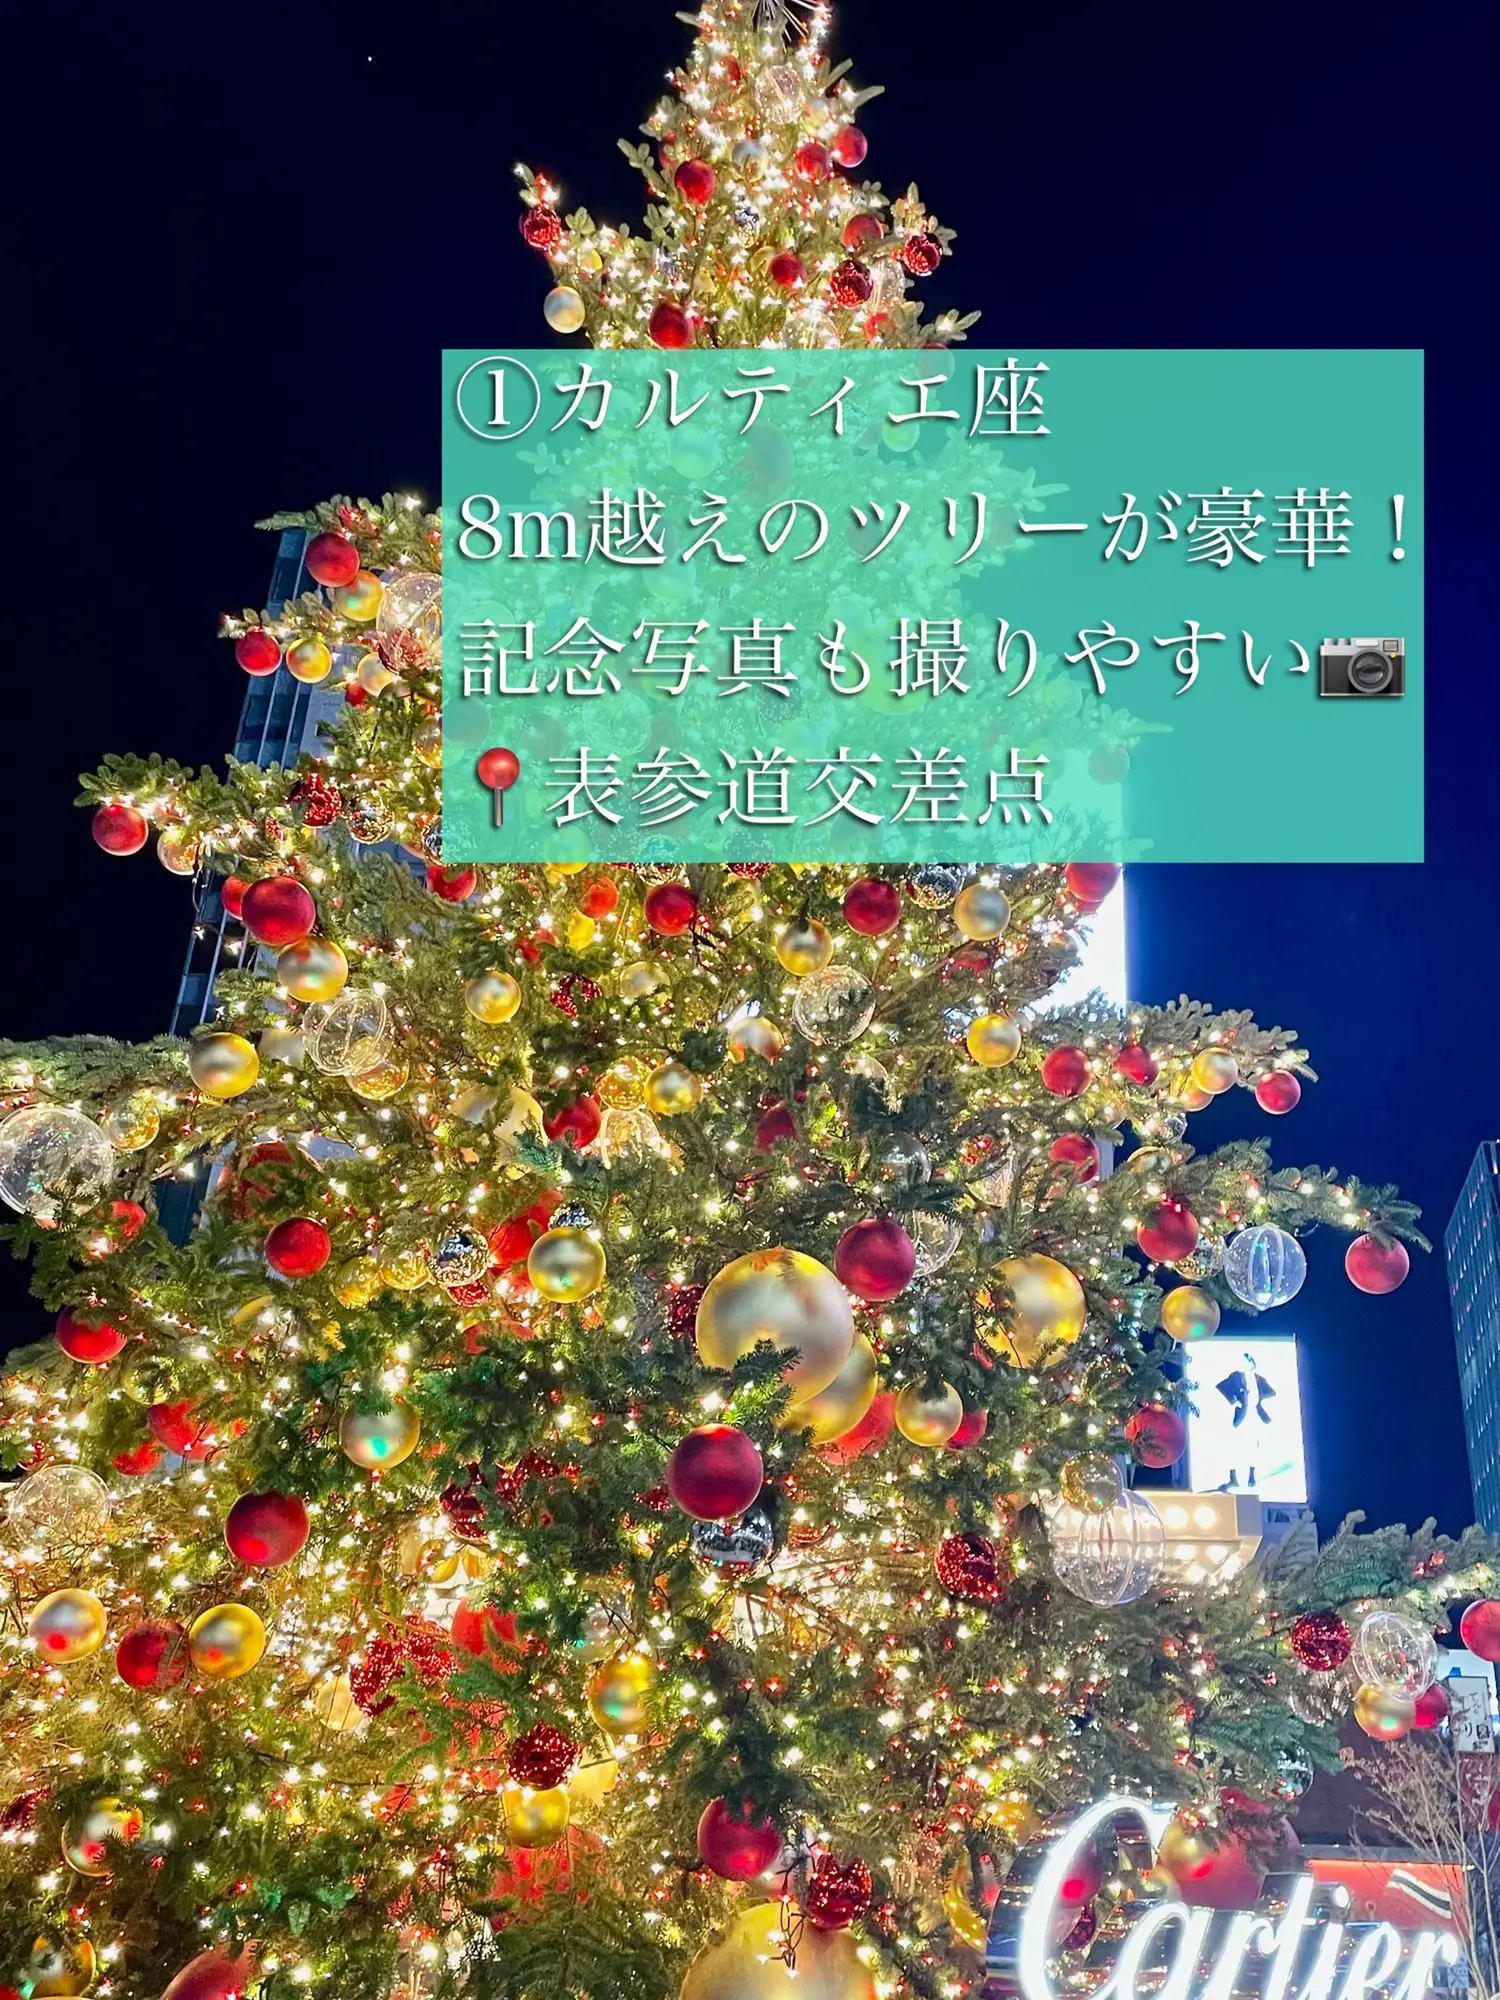 表参道のクリスマスイルミネーション特集🎄 | Suwa コスメ紹介が投稿